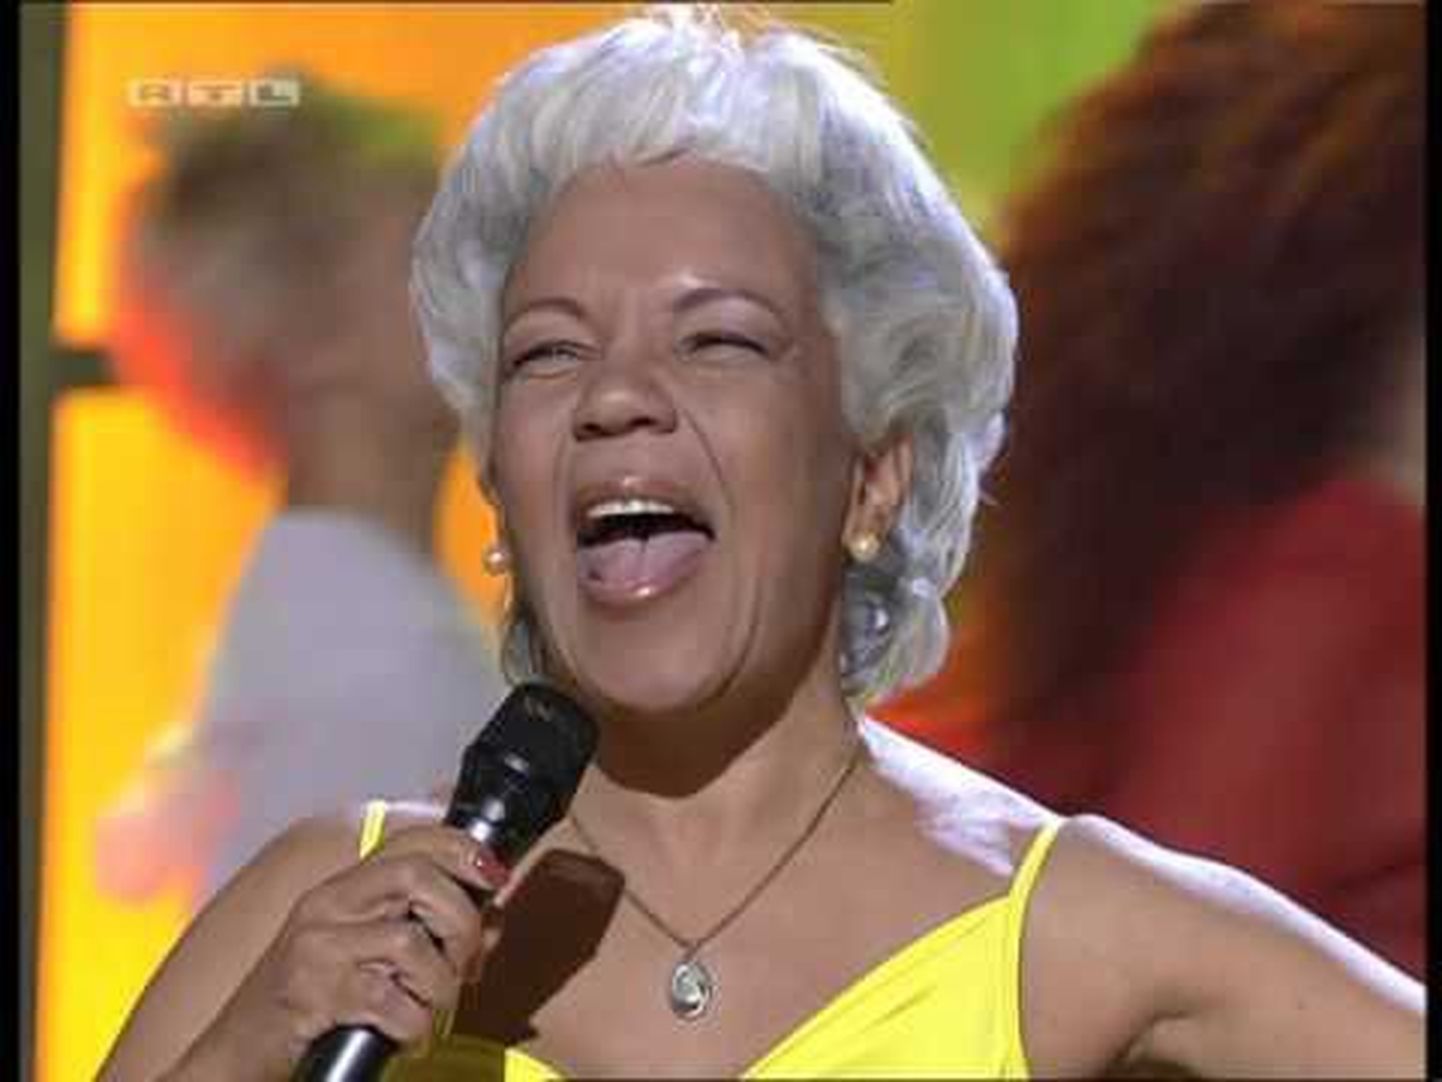 Brasiilia lauljatar Loalwa Braz